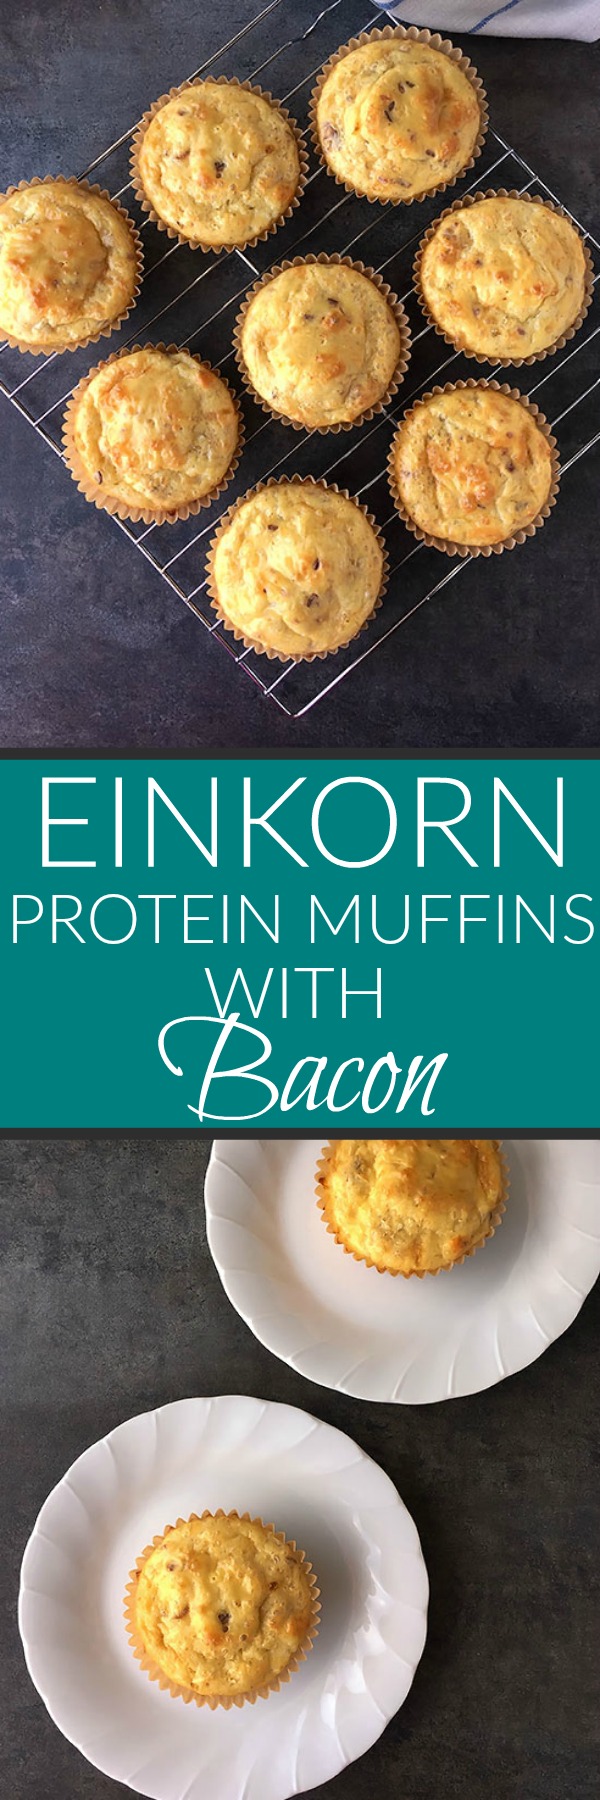 Einkorn Protein Muffins with Bacon